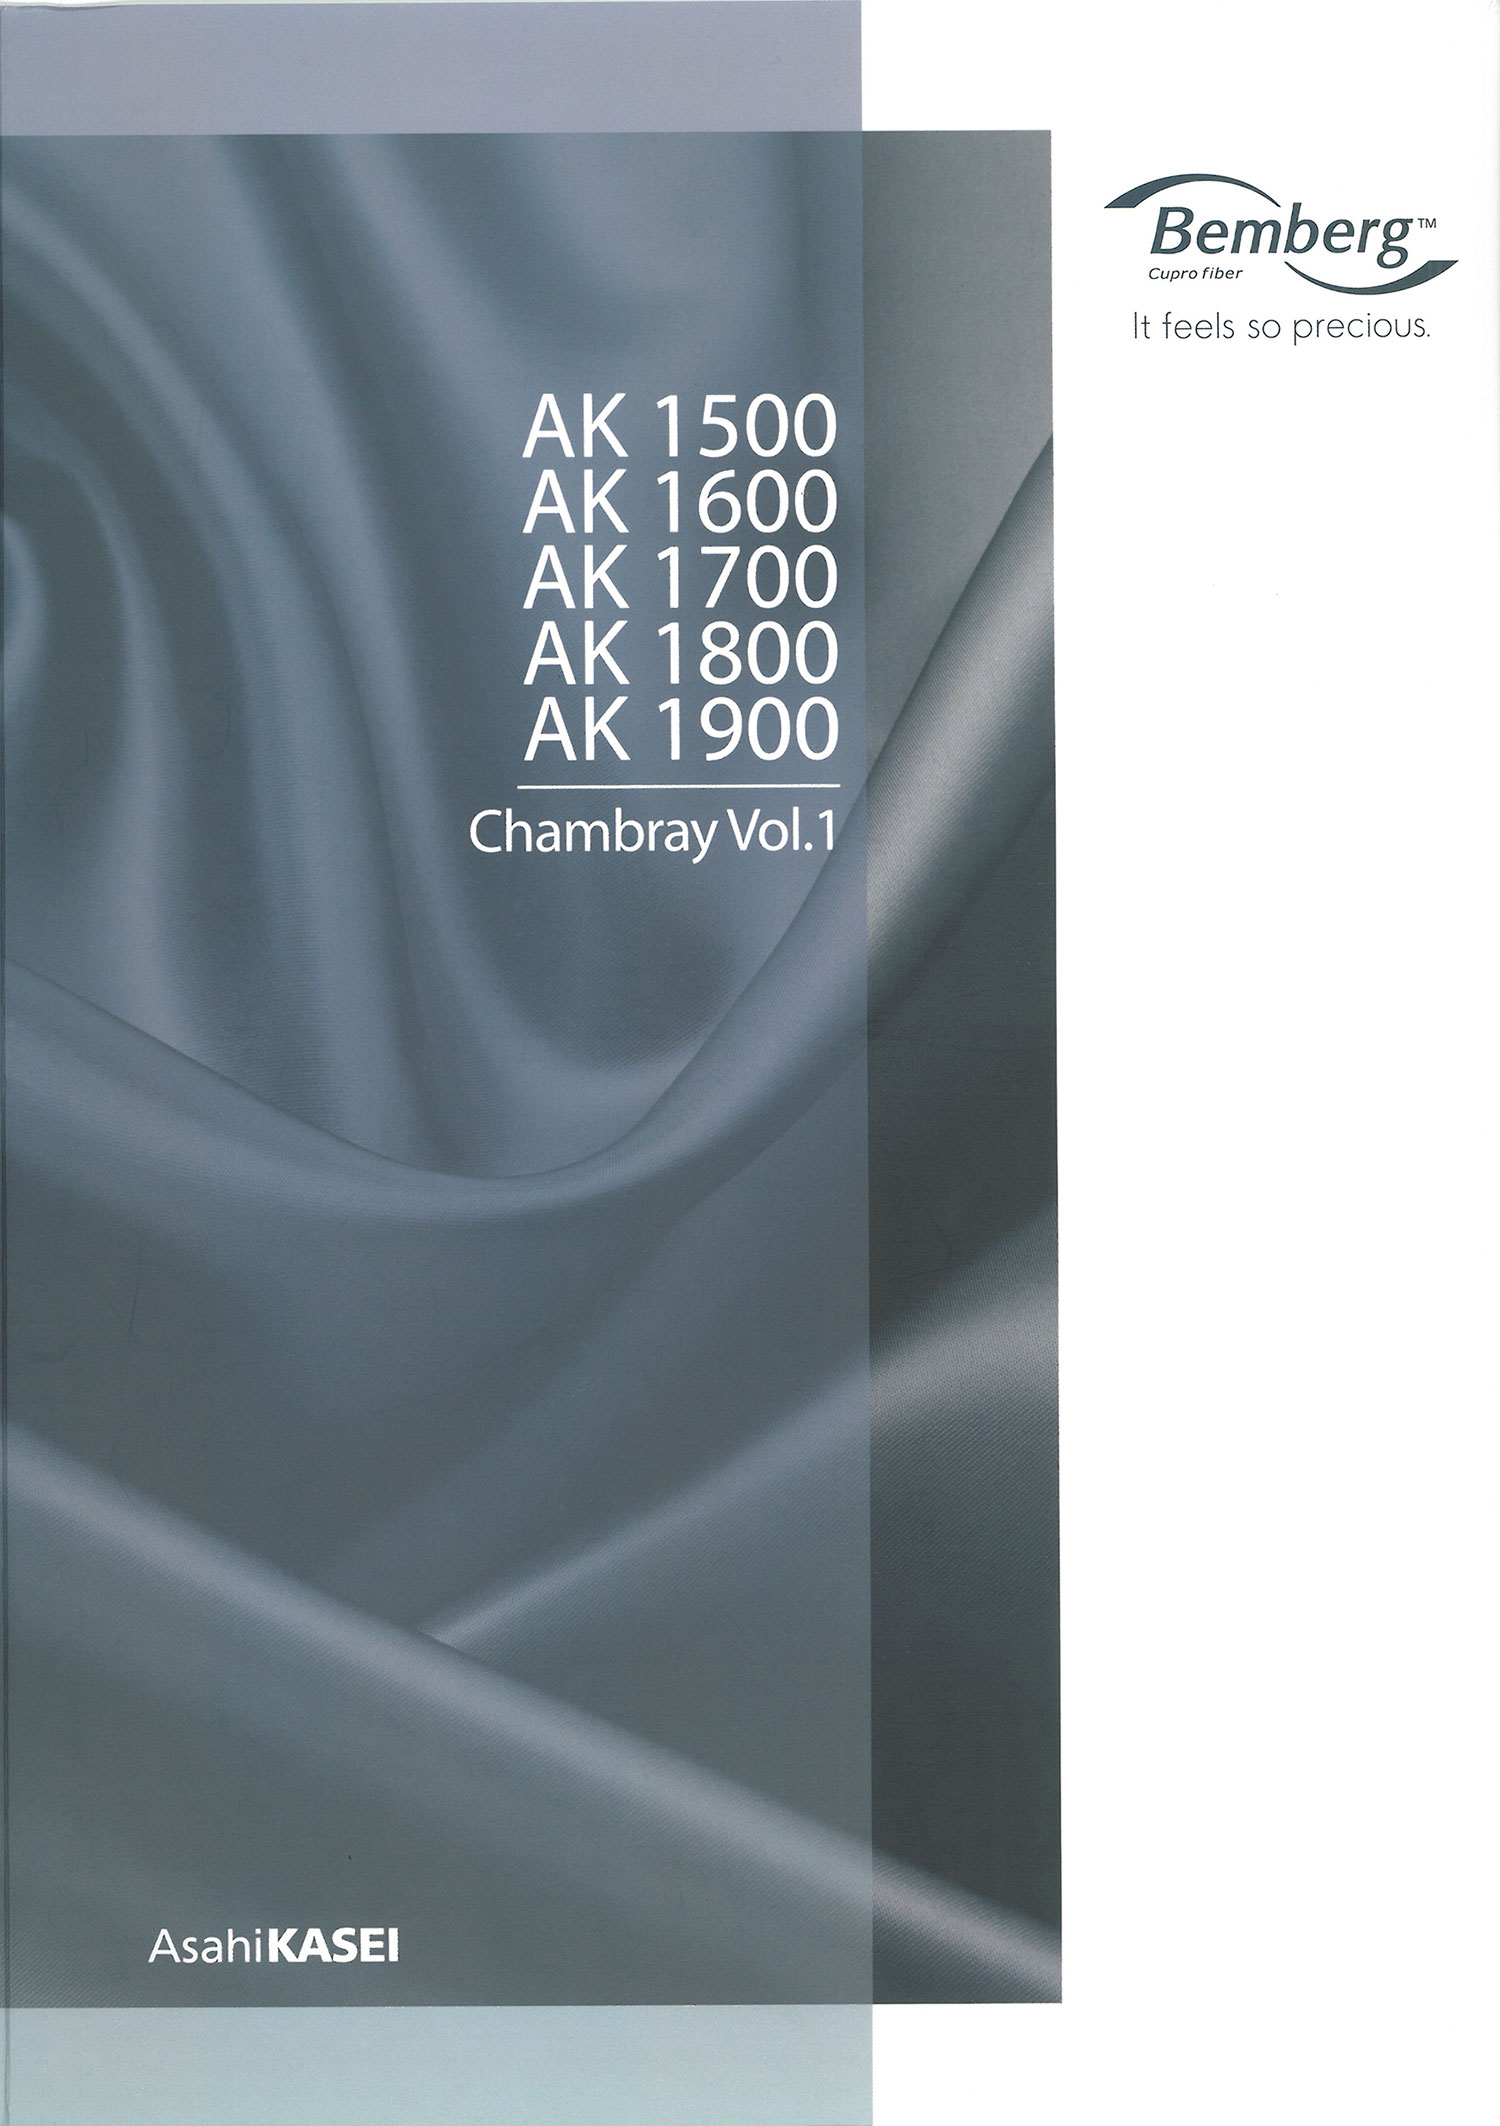 AK1500 Cupra Taffeta Lining (Bemberg) Asahi KASEI